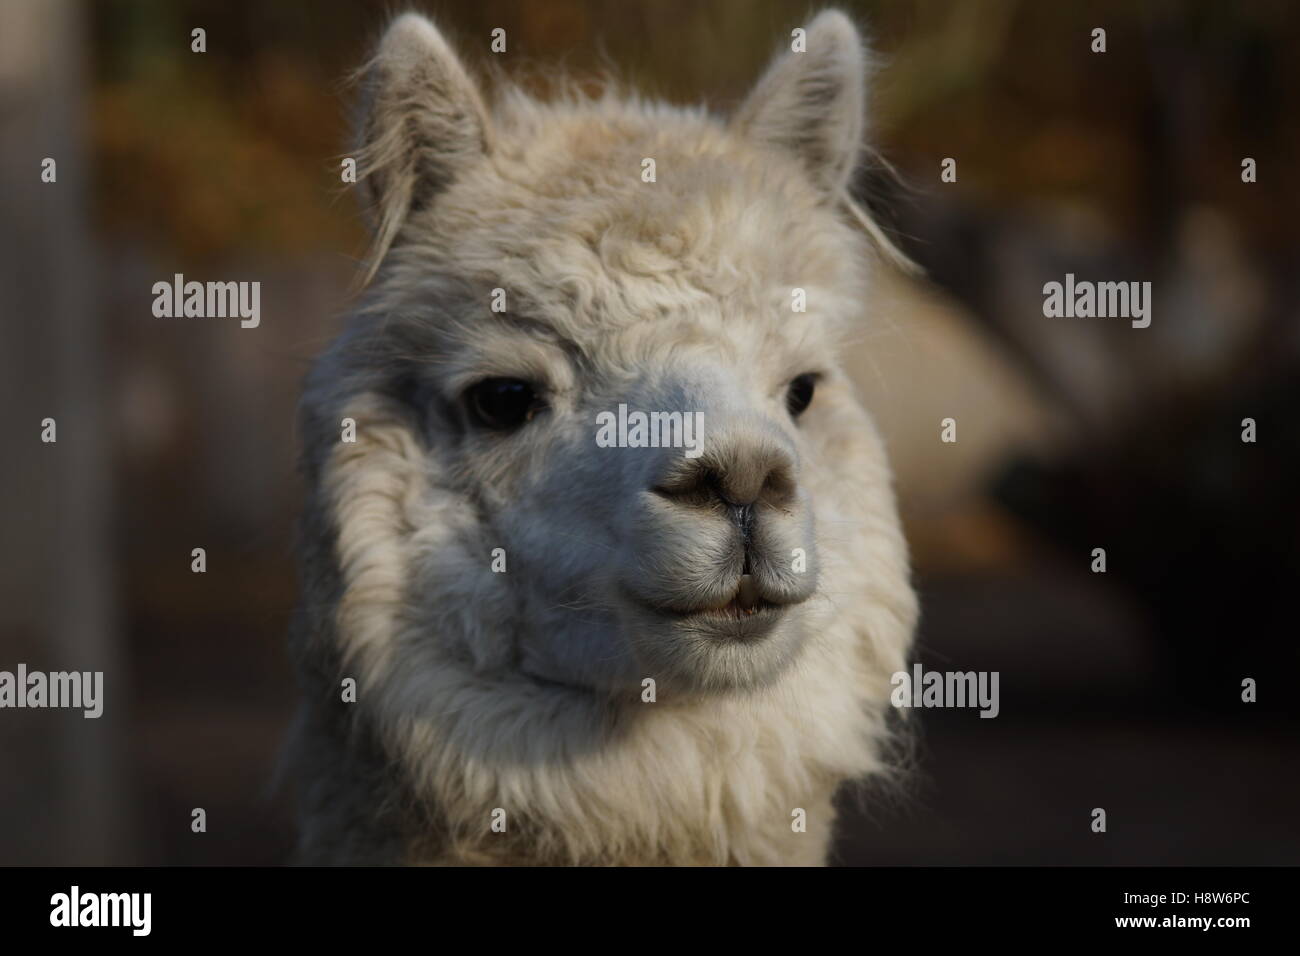 Lama head Stock Photo